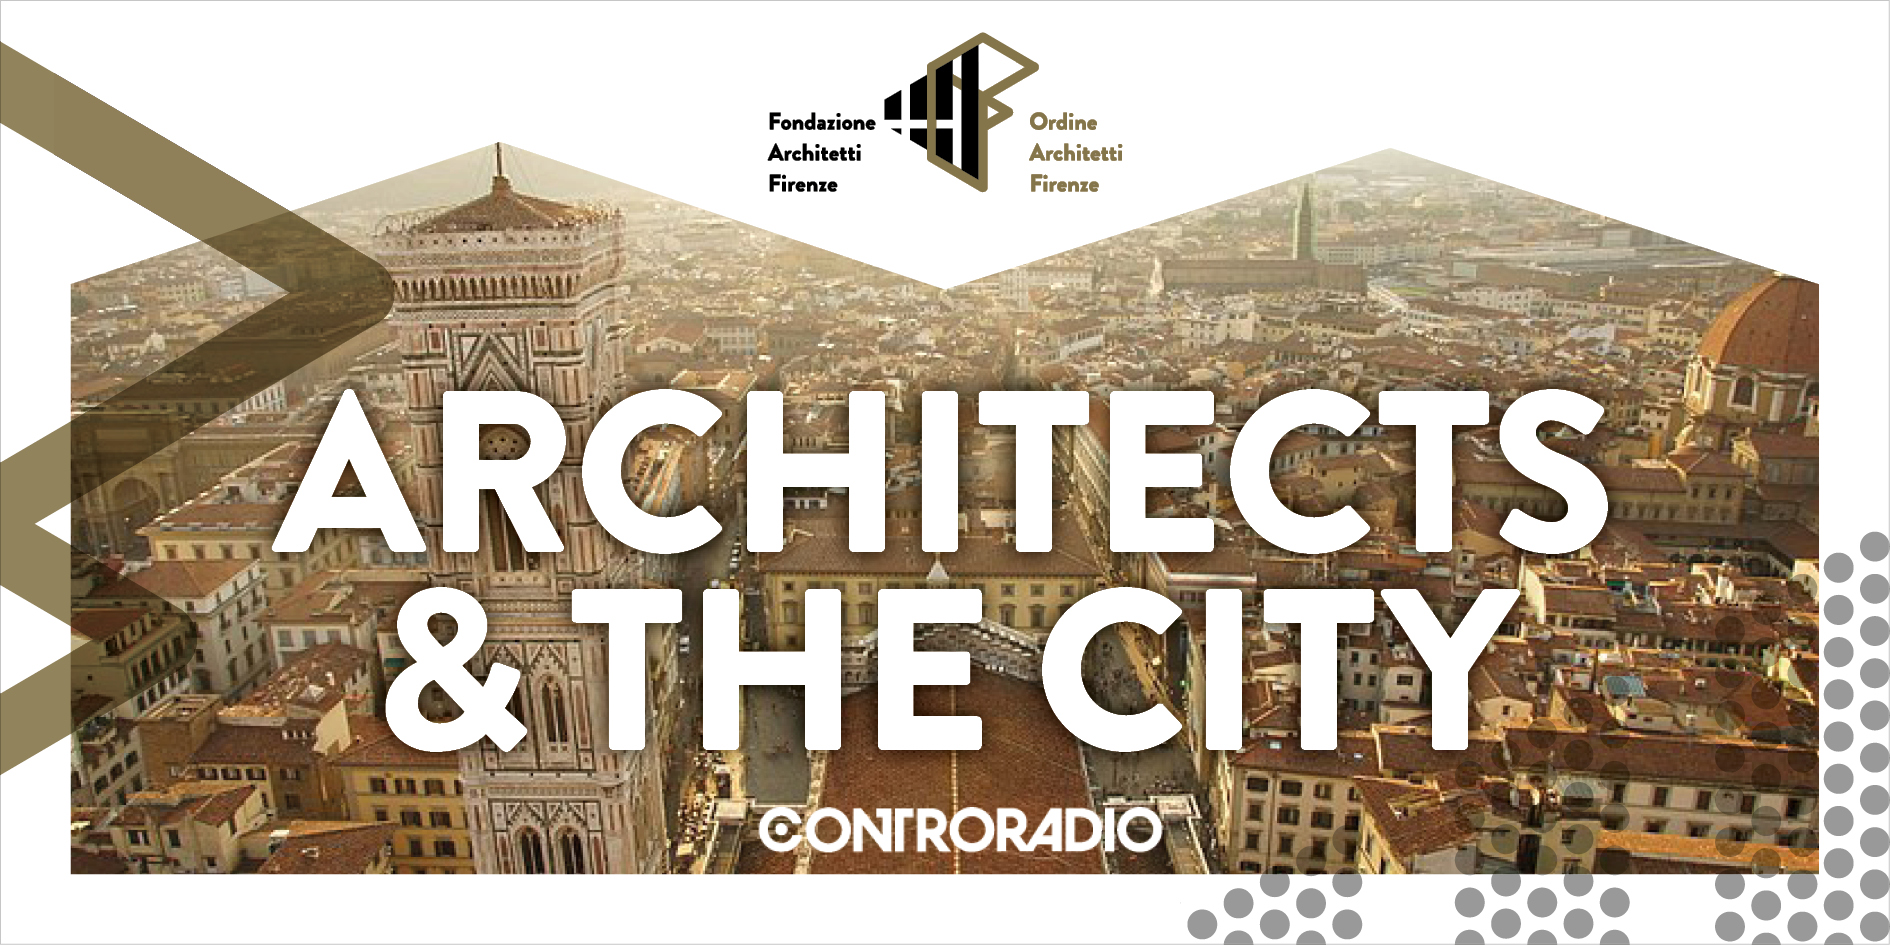 L'Agenda dell'Architetetto del 30 maggio 2019